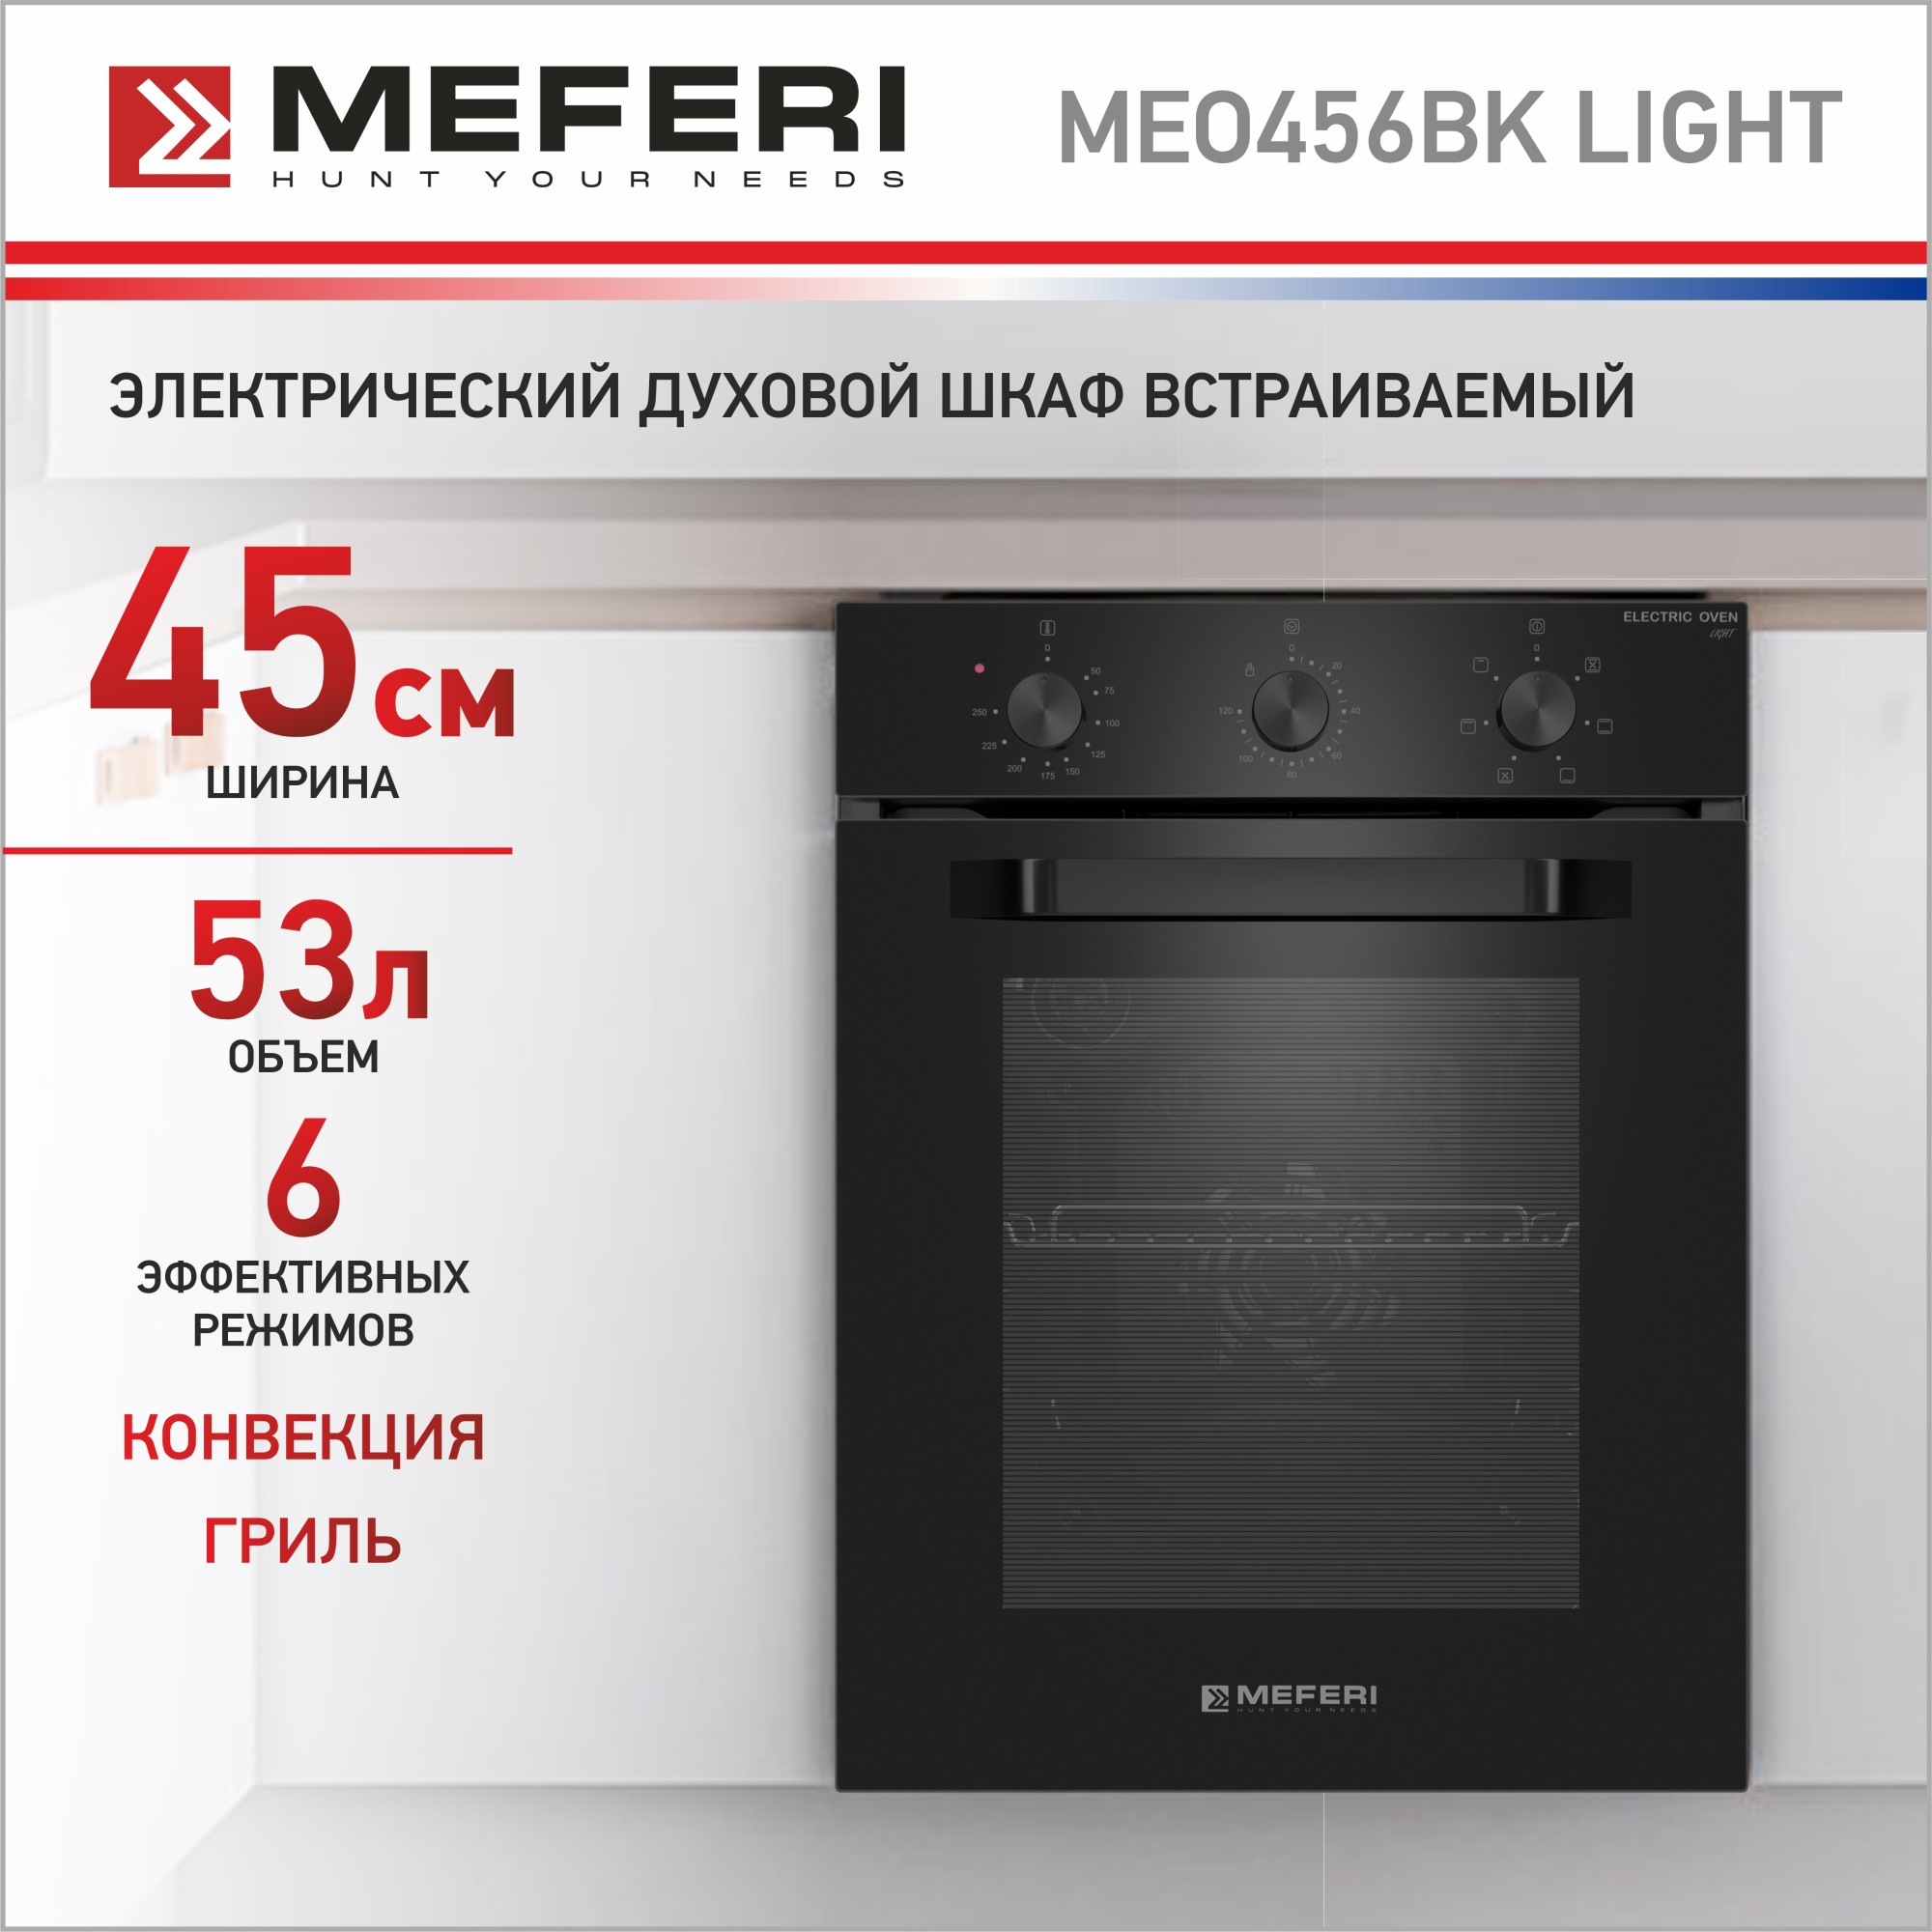 Электрический духовой шкаф MEFERI MEO456BK LIGHT духовой шкаф beko bie 24301 w электрический 71 л 6 программ гриль белый